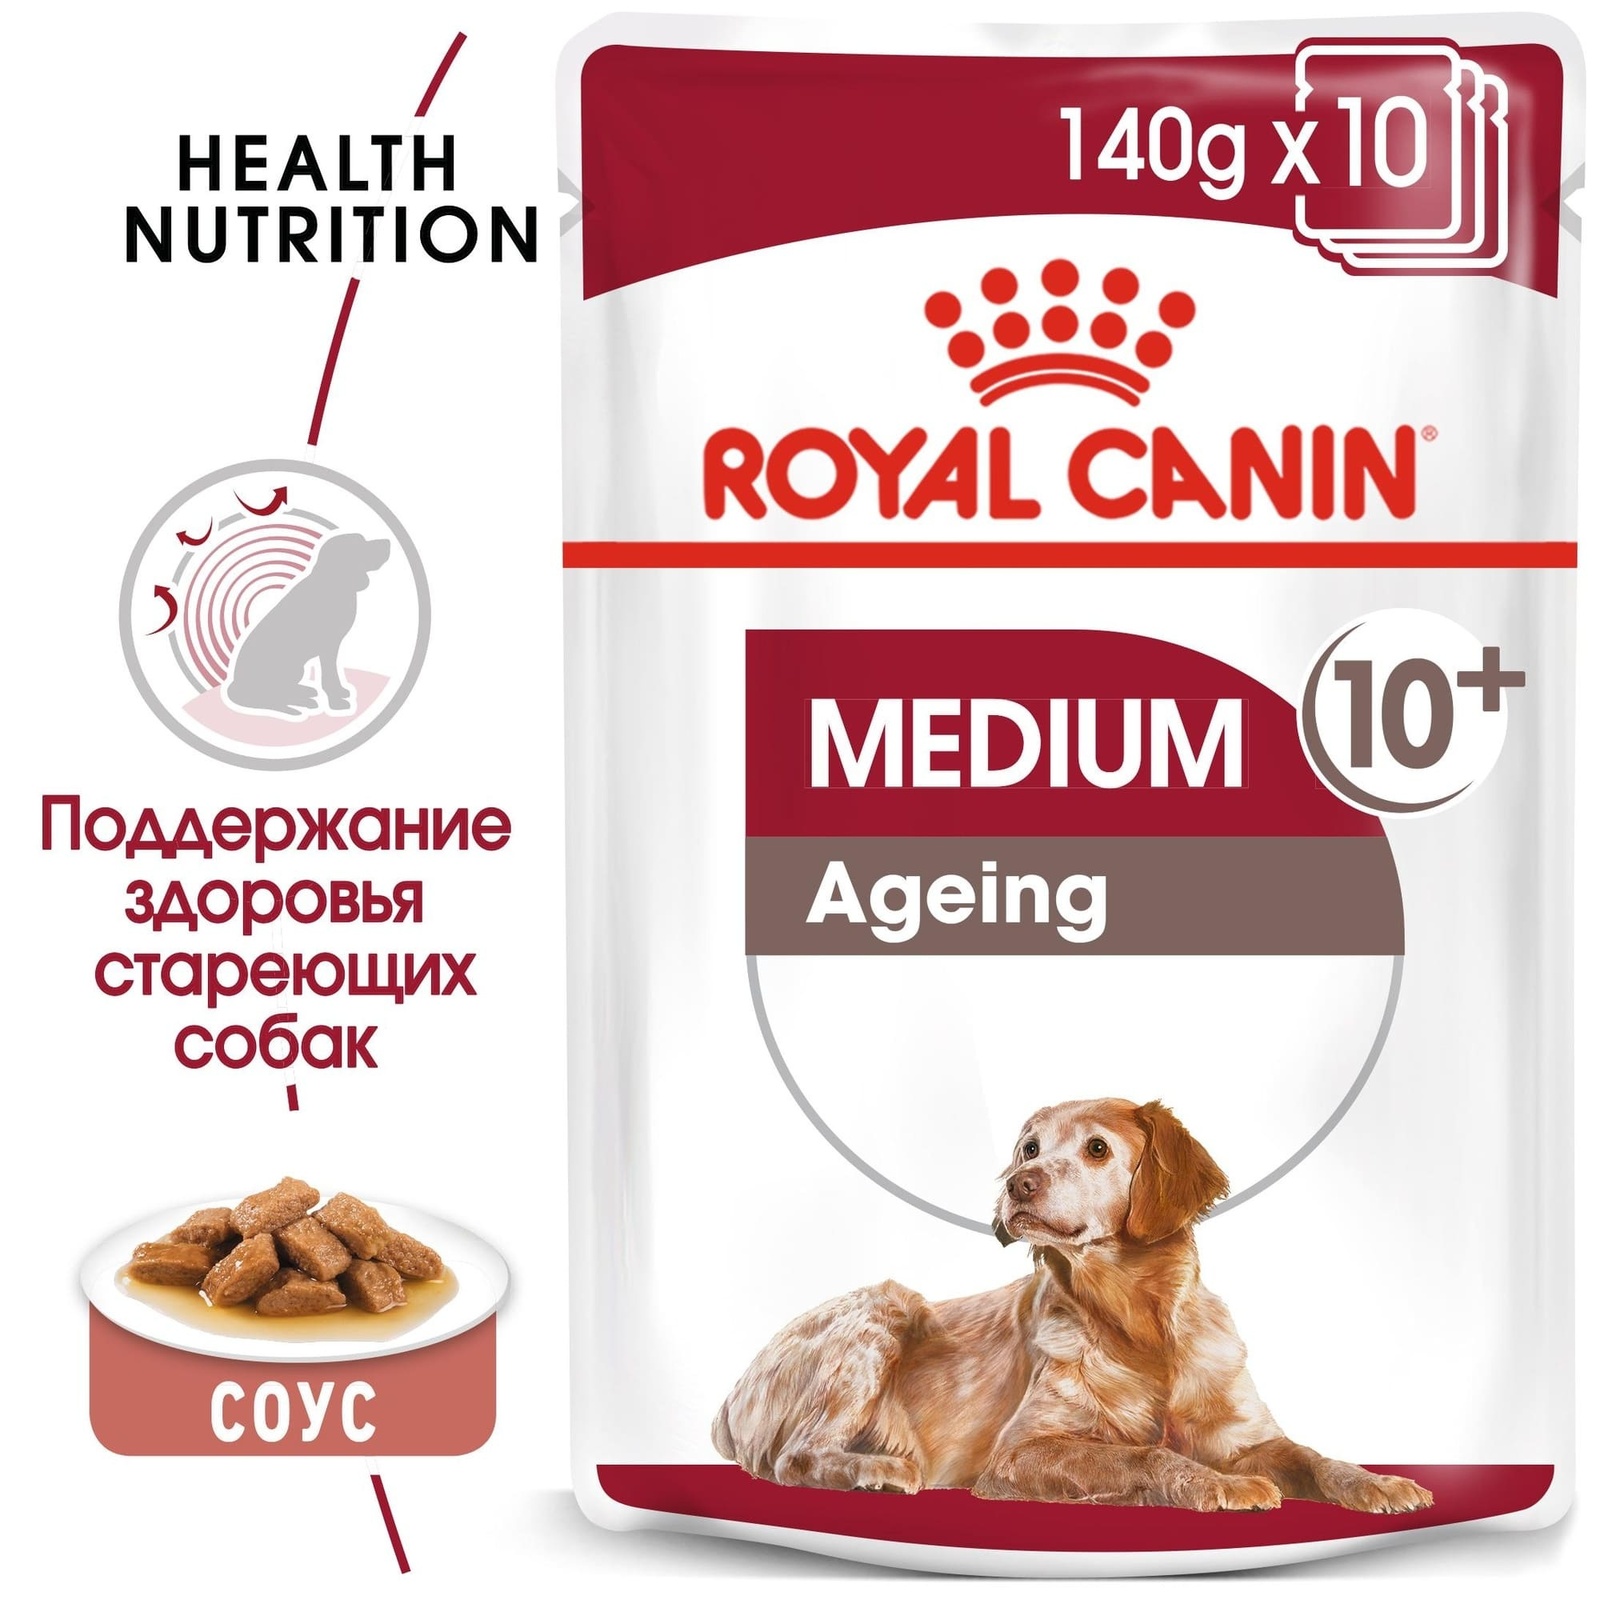 Royal Canin кусочки в соусе для пожилых собак средних пород старше 10 лет (140 г) 